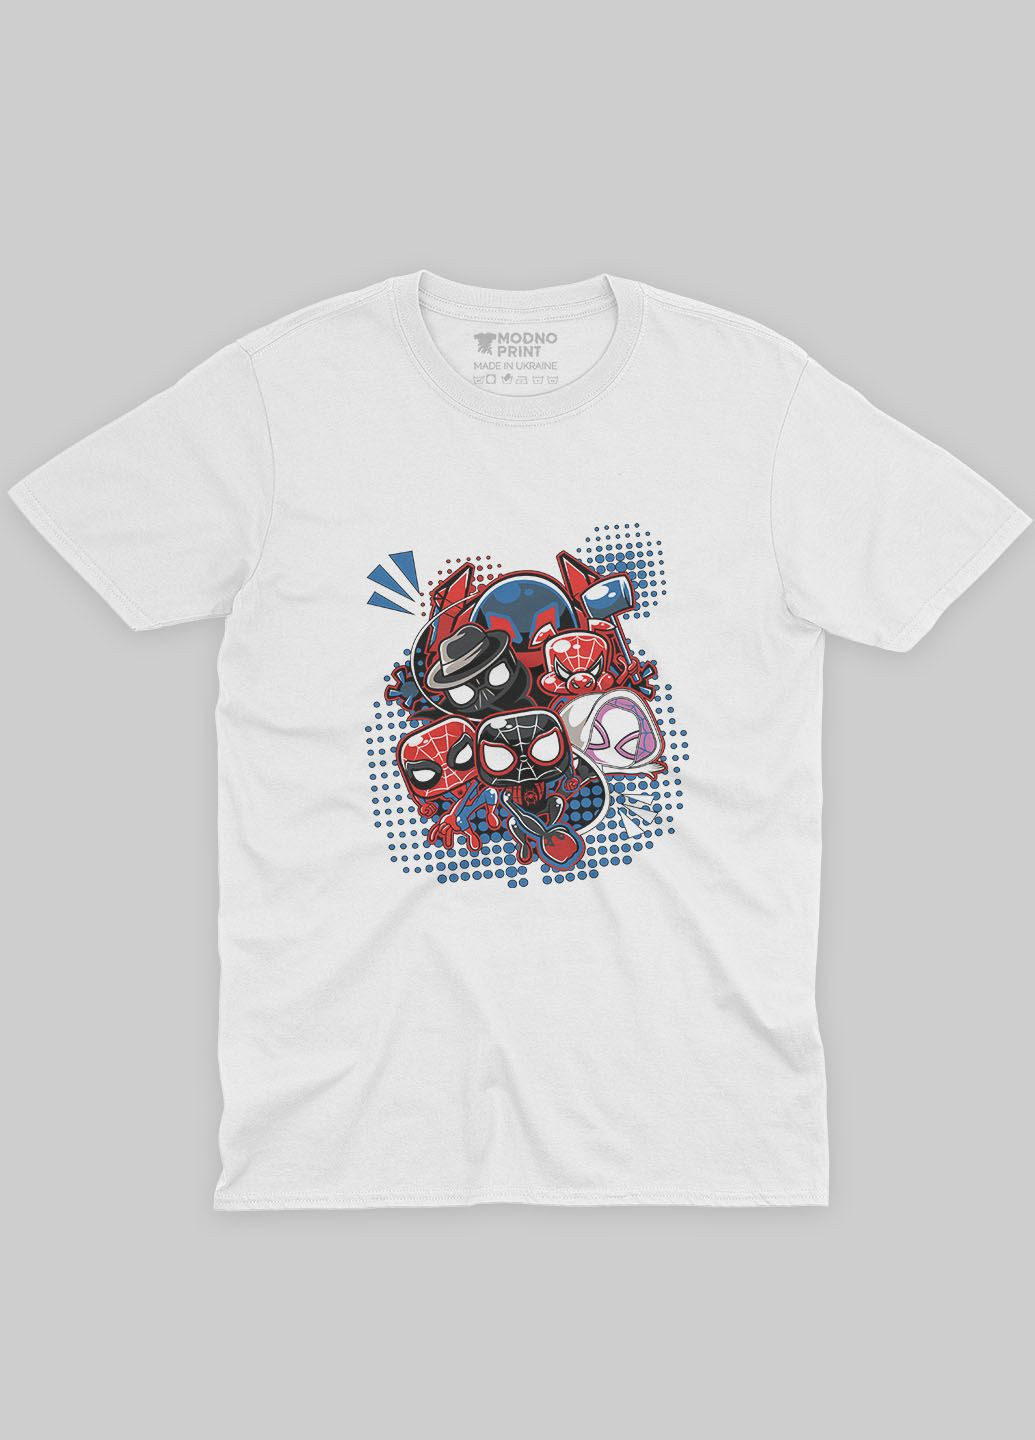 Біла демісезонна футболка для хлопчика з принтом супергероя - людина-павук (ts001-1-whi-006-014-023-b) Modno